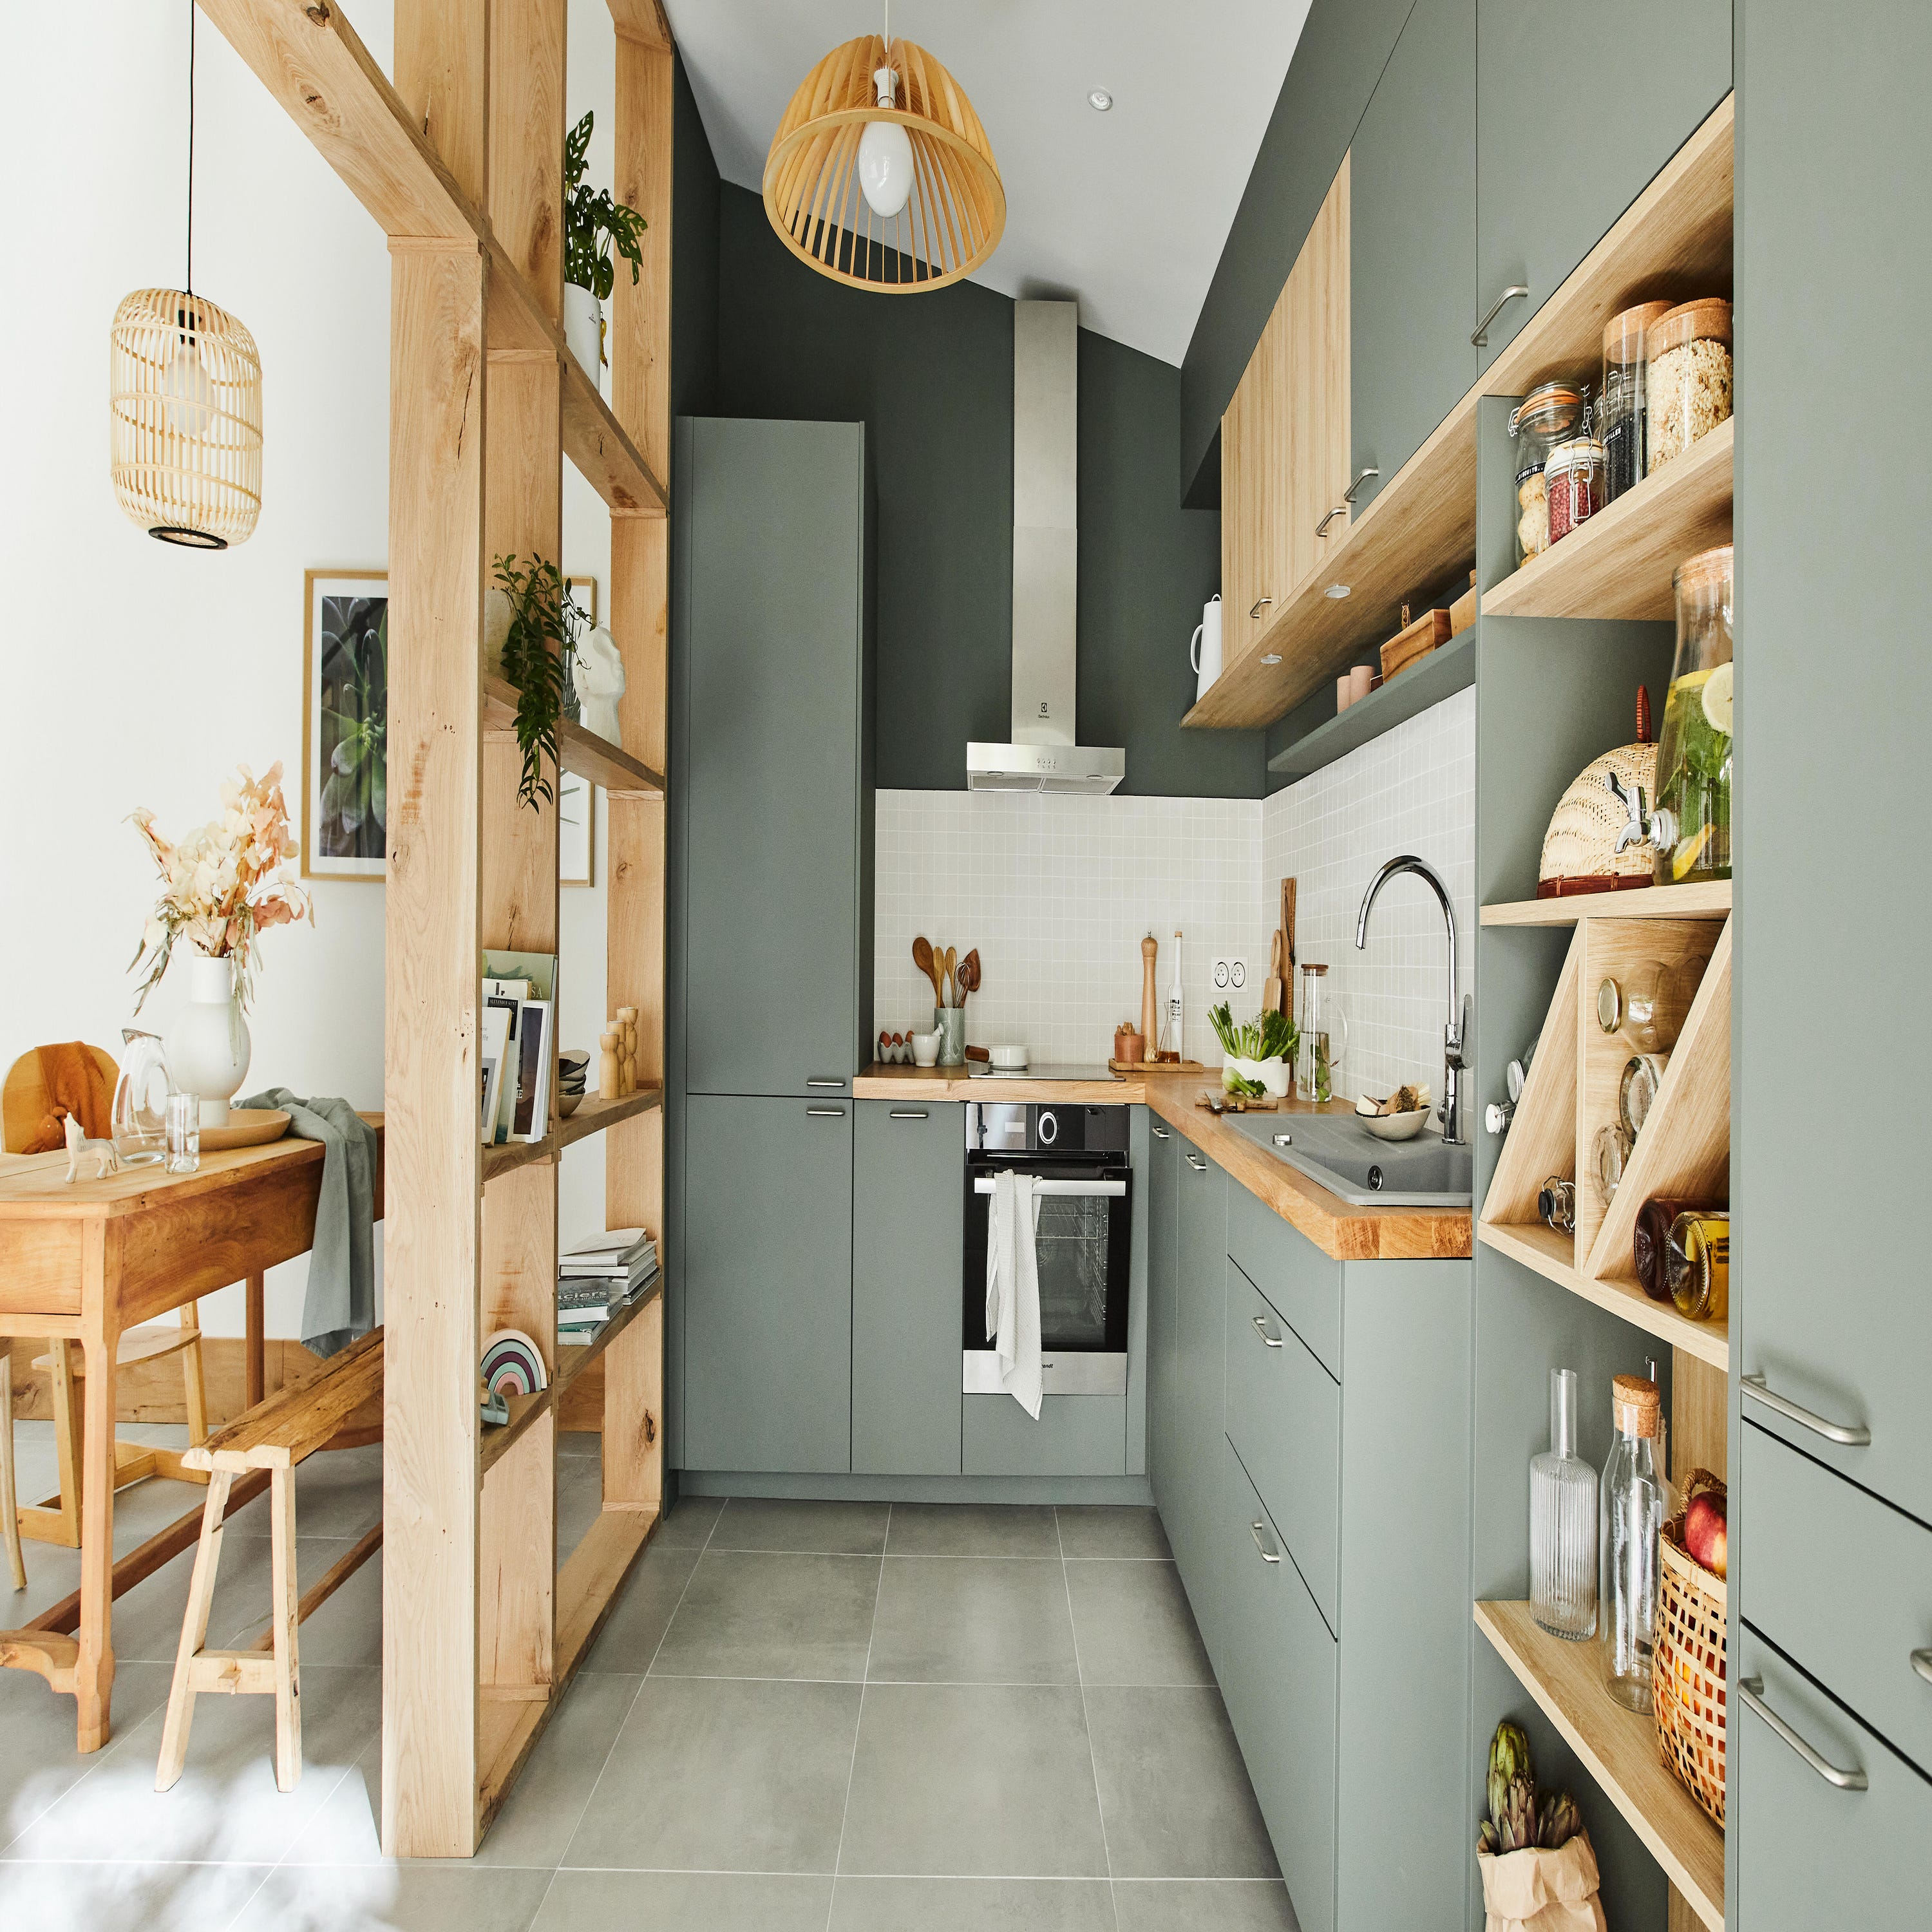 Casa sostenibile: gli accessori per la cucina